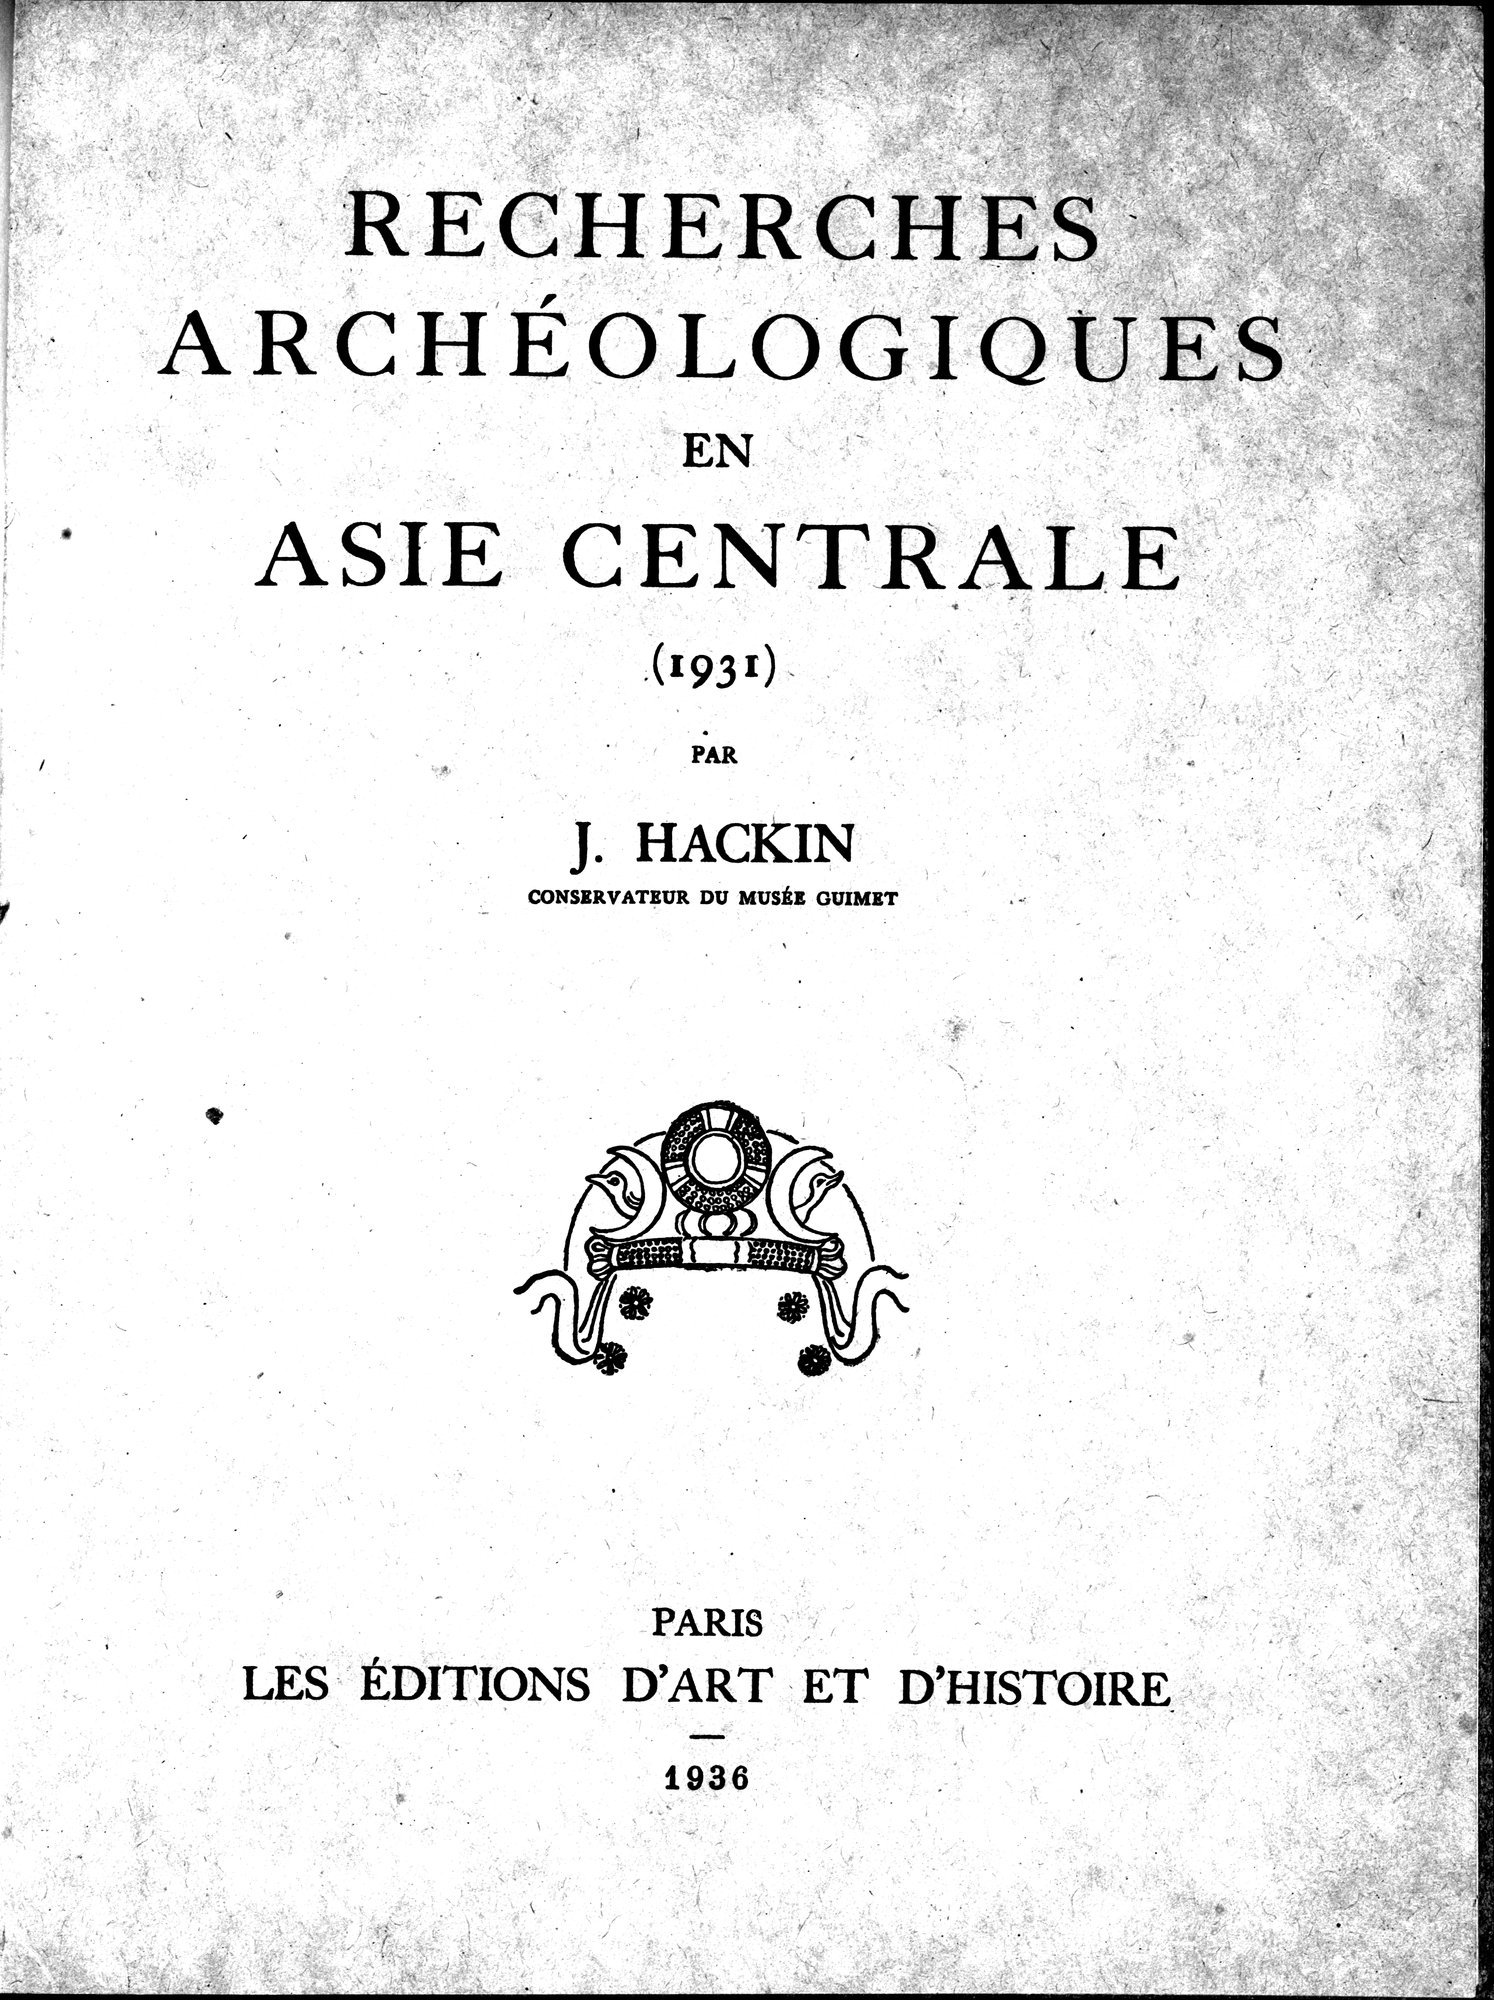 Recherches Archéologiques en Asie Centrale (1931) : vol.1 / Page 5 (Grayscale High Resolution Image)